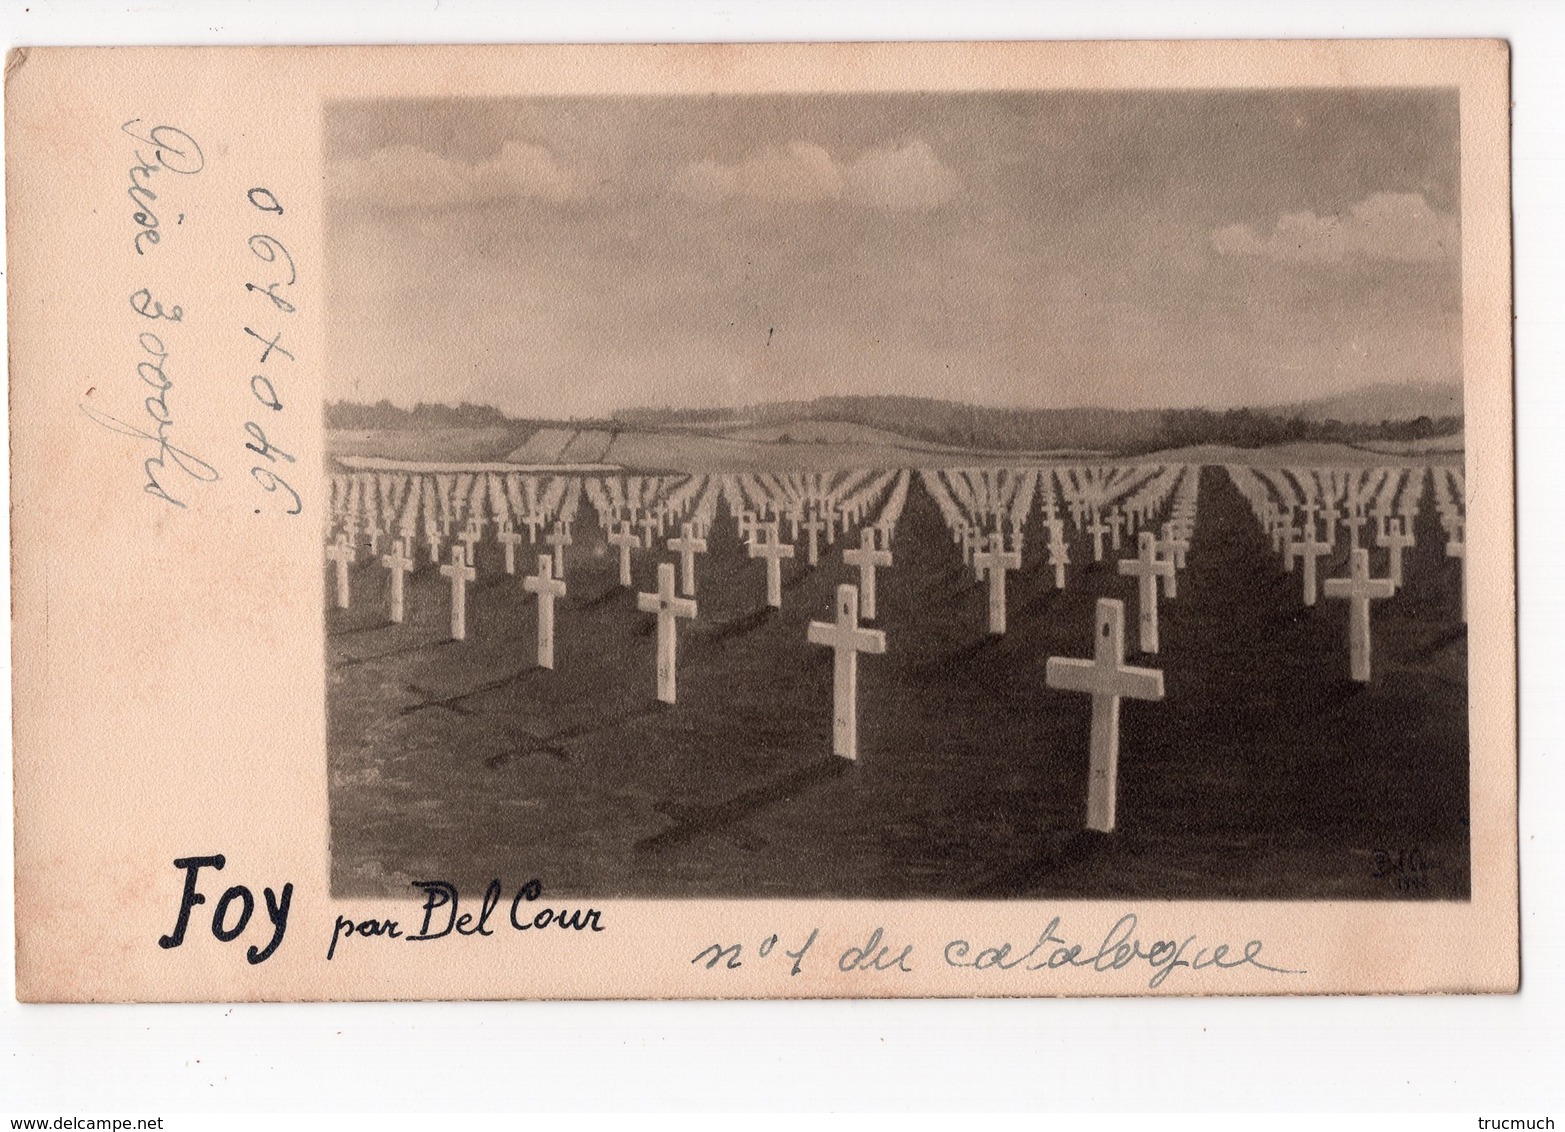 B2 -  FOY - Cliché D'une Peinture De DEL COUR  - Cimetière -  Militaria  *carte-photo* - Bastogne